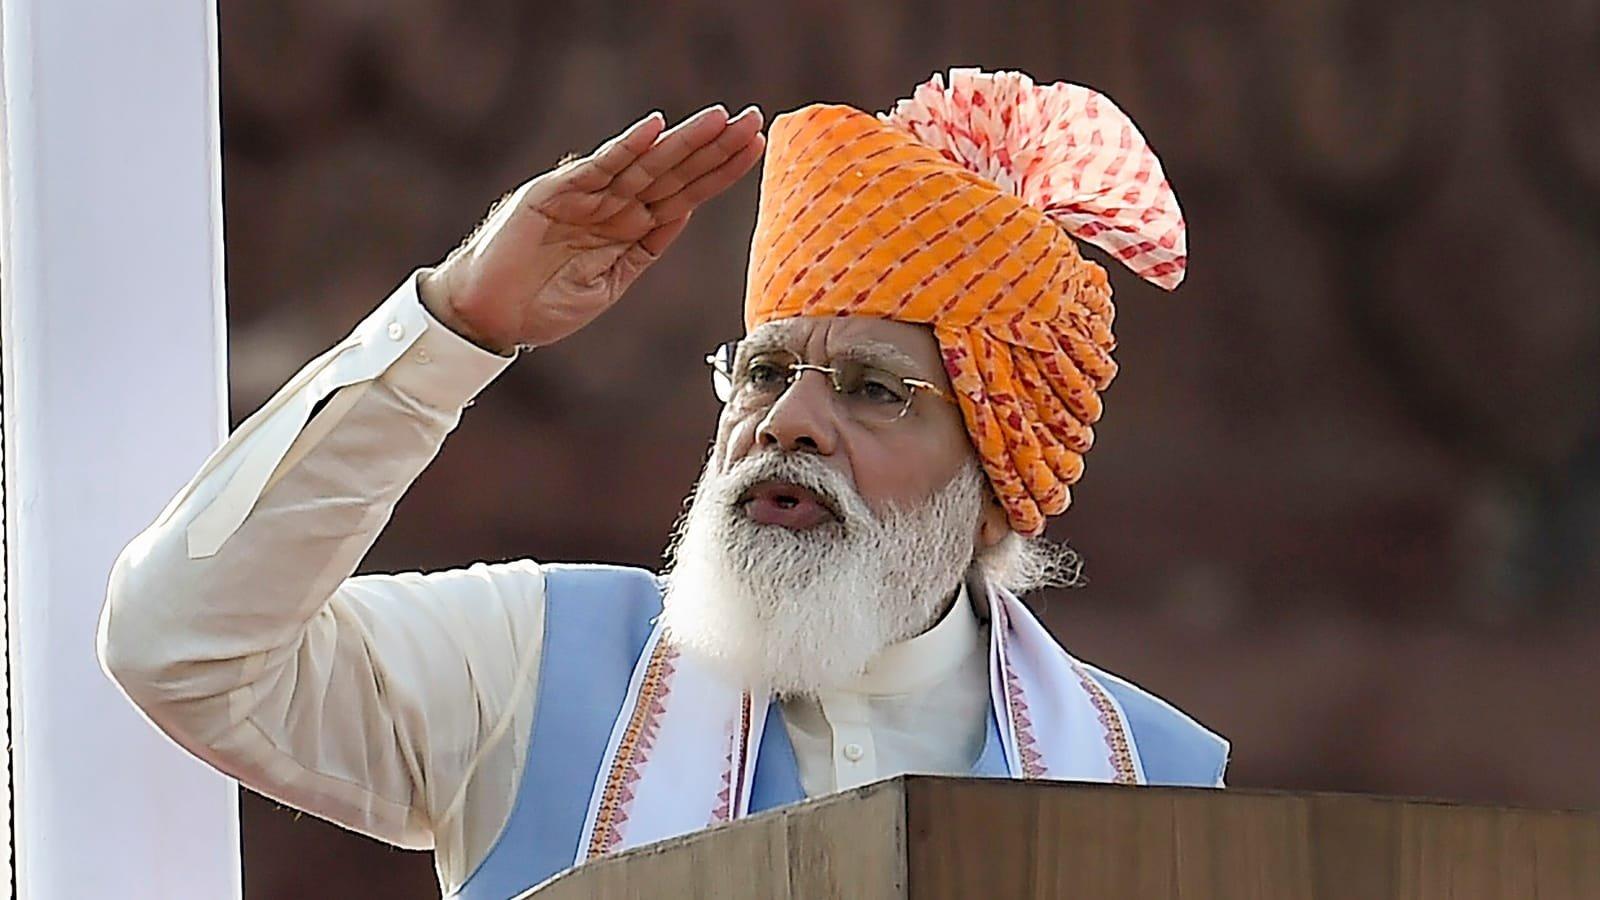 PM Modi sets India's target to become 'energy independent' by 2047|2047 ആകുമ്പോഴേക്കും ഊർജ്ജ സ്വതന്ത്രരാകുക എന്ന ഇന്ത്യയുടെ ലക്ഷ്യം പ്രധാനമന്ത്രി മോദി നിശ്ചയിച്ചു_20.1